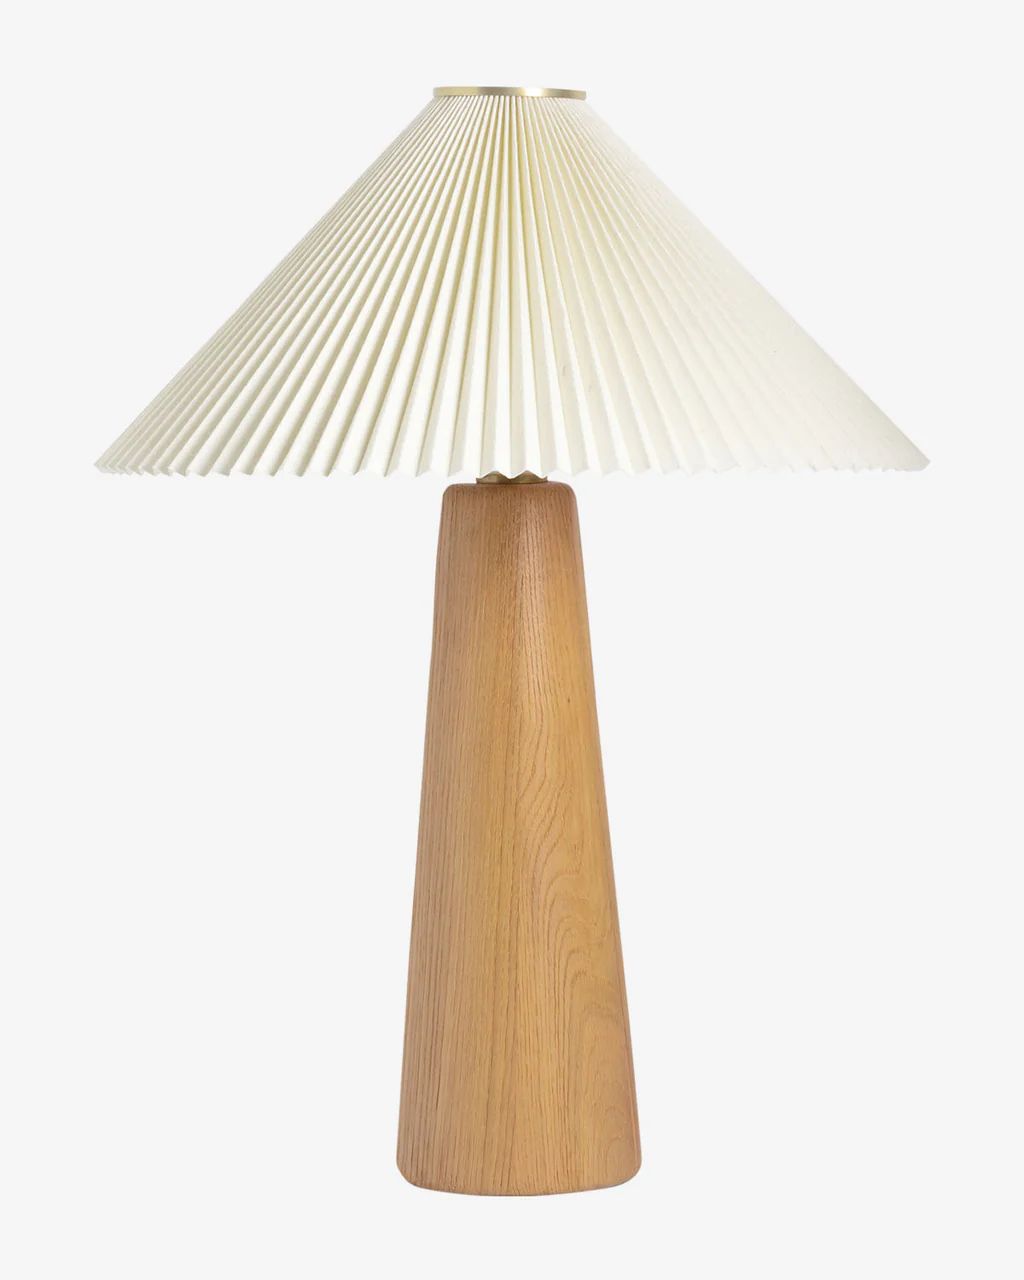 Nora Light Oak Table Lamp | McGee & Co.